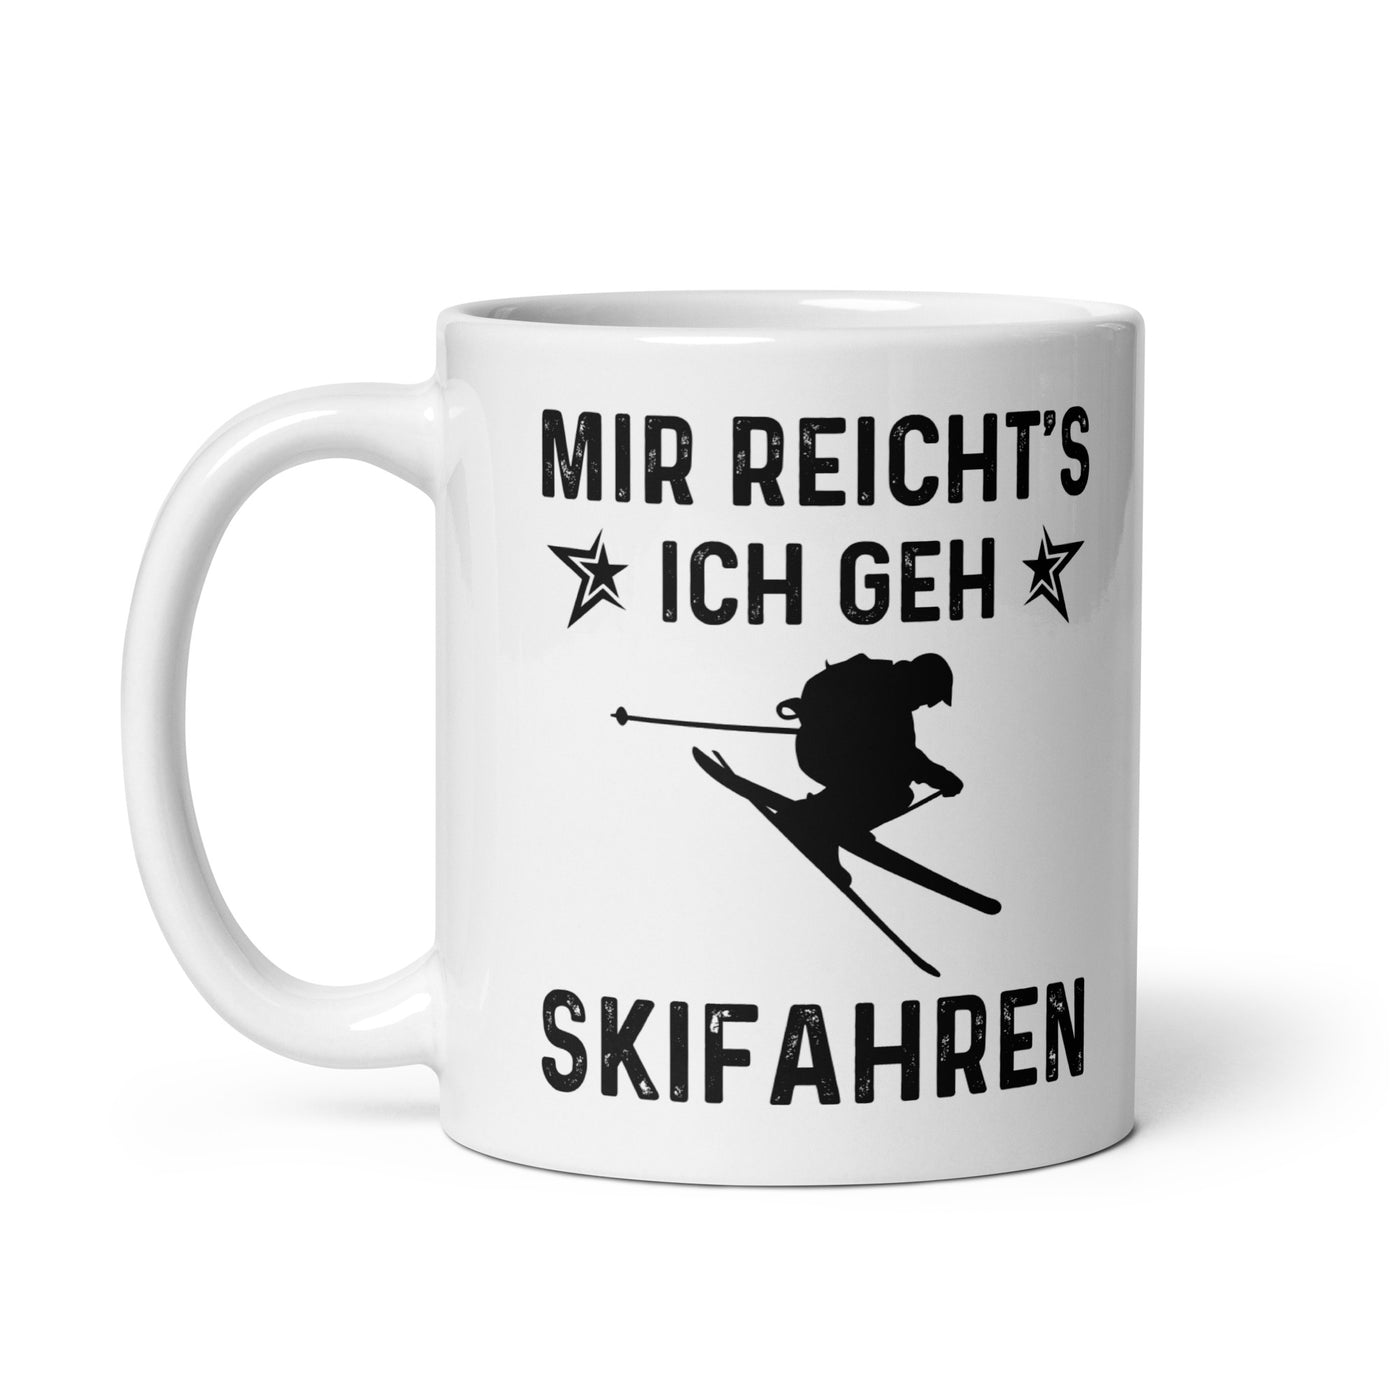 Mir Reicht'S Ich Gen Skifahren - Tasse ski 11oz